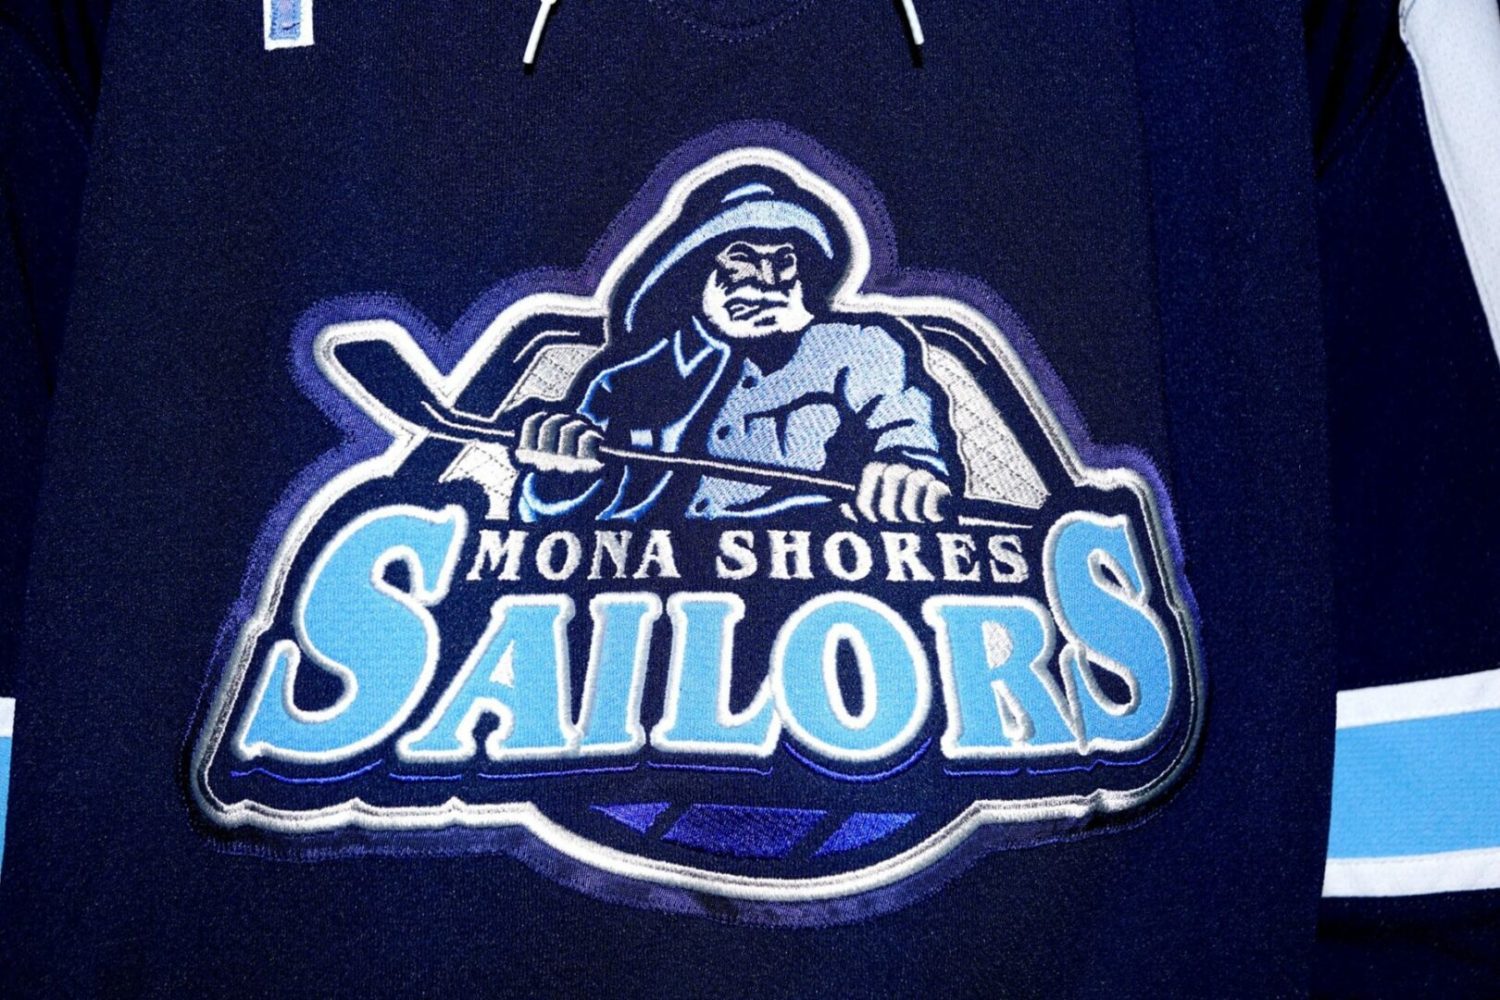 Mona Shores routs Jenison in boys’ lacrosse, 12-2